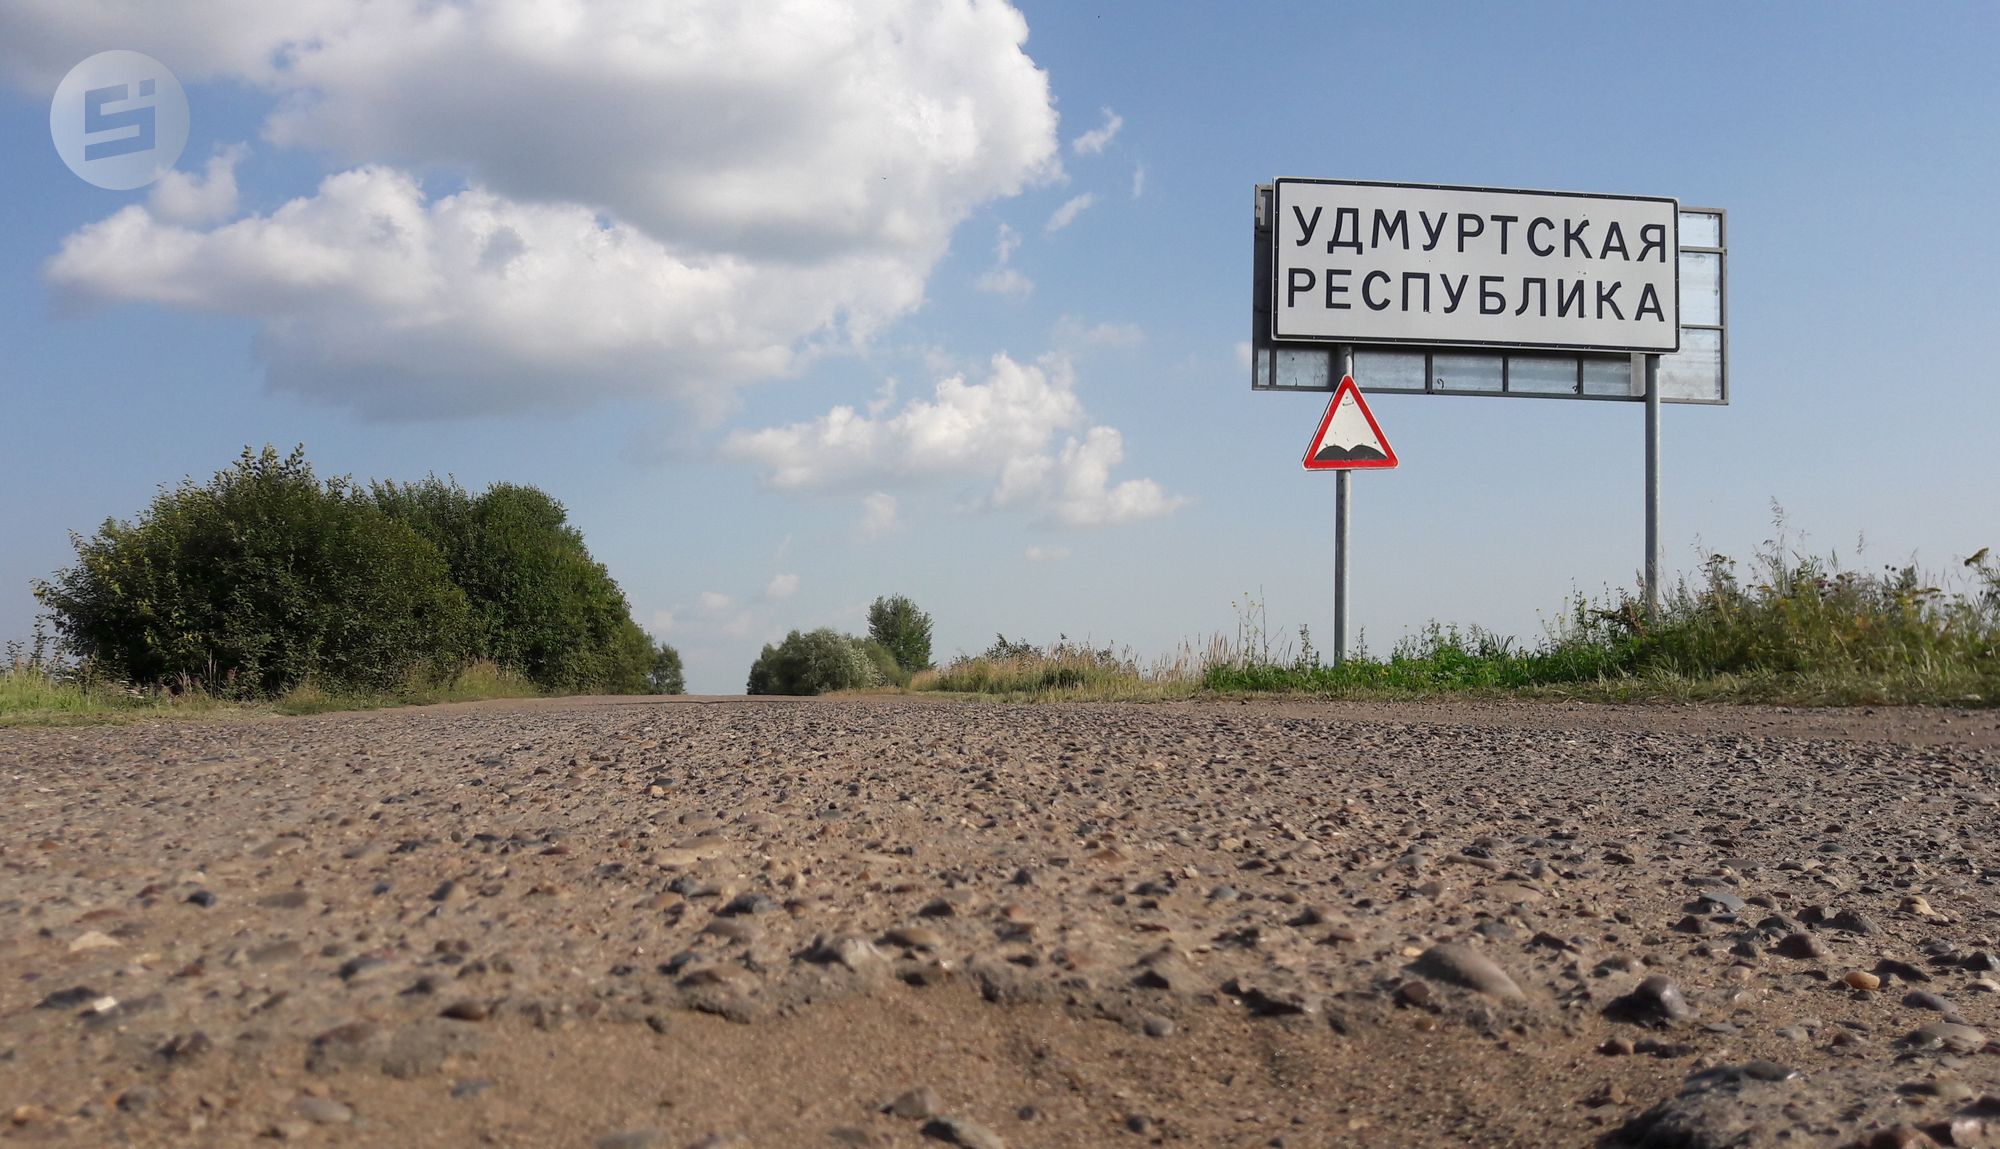 Удмуртия готова отдать более 350 млн рублей за паспортизацию дорог